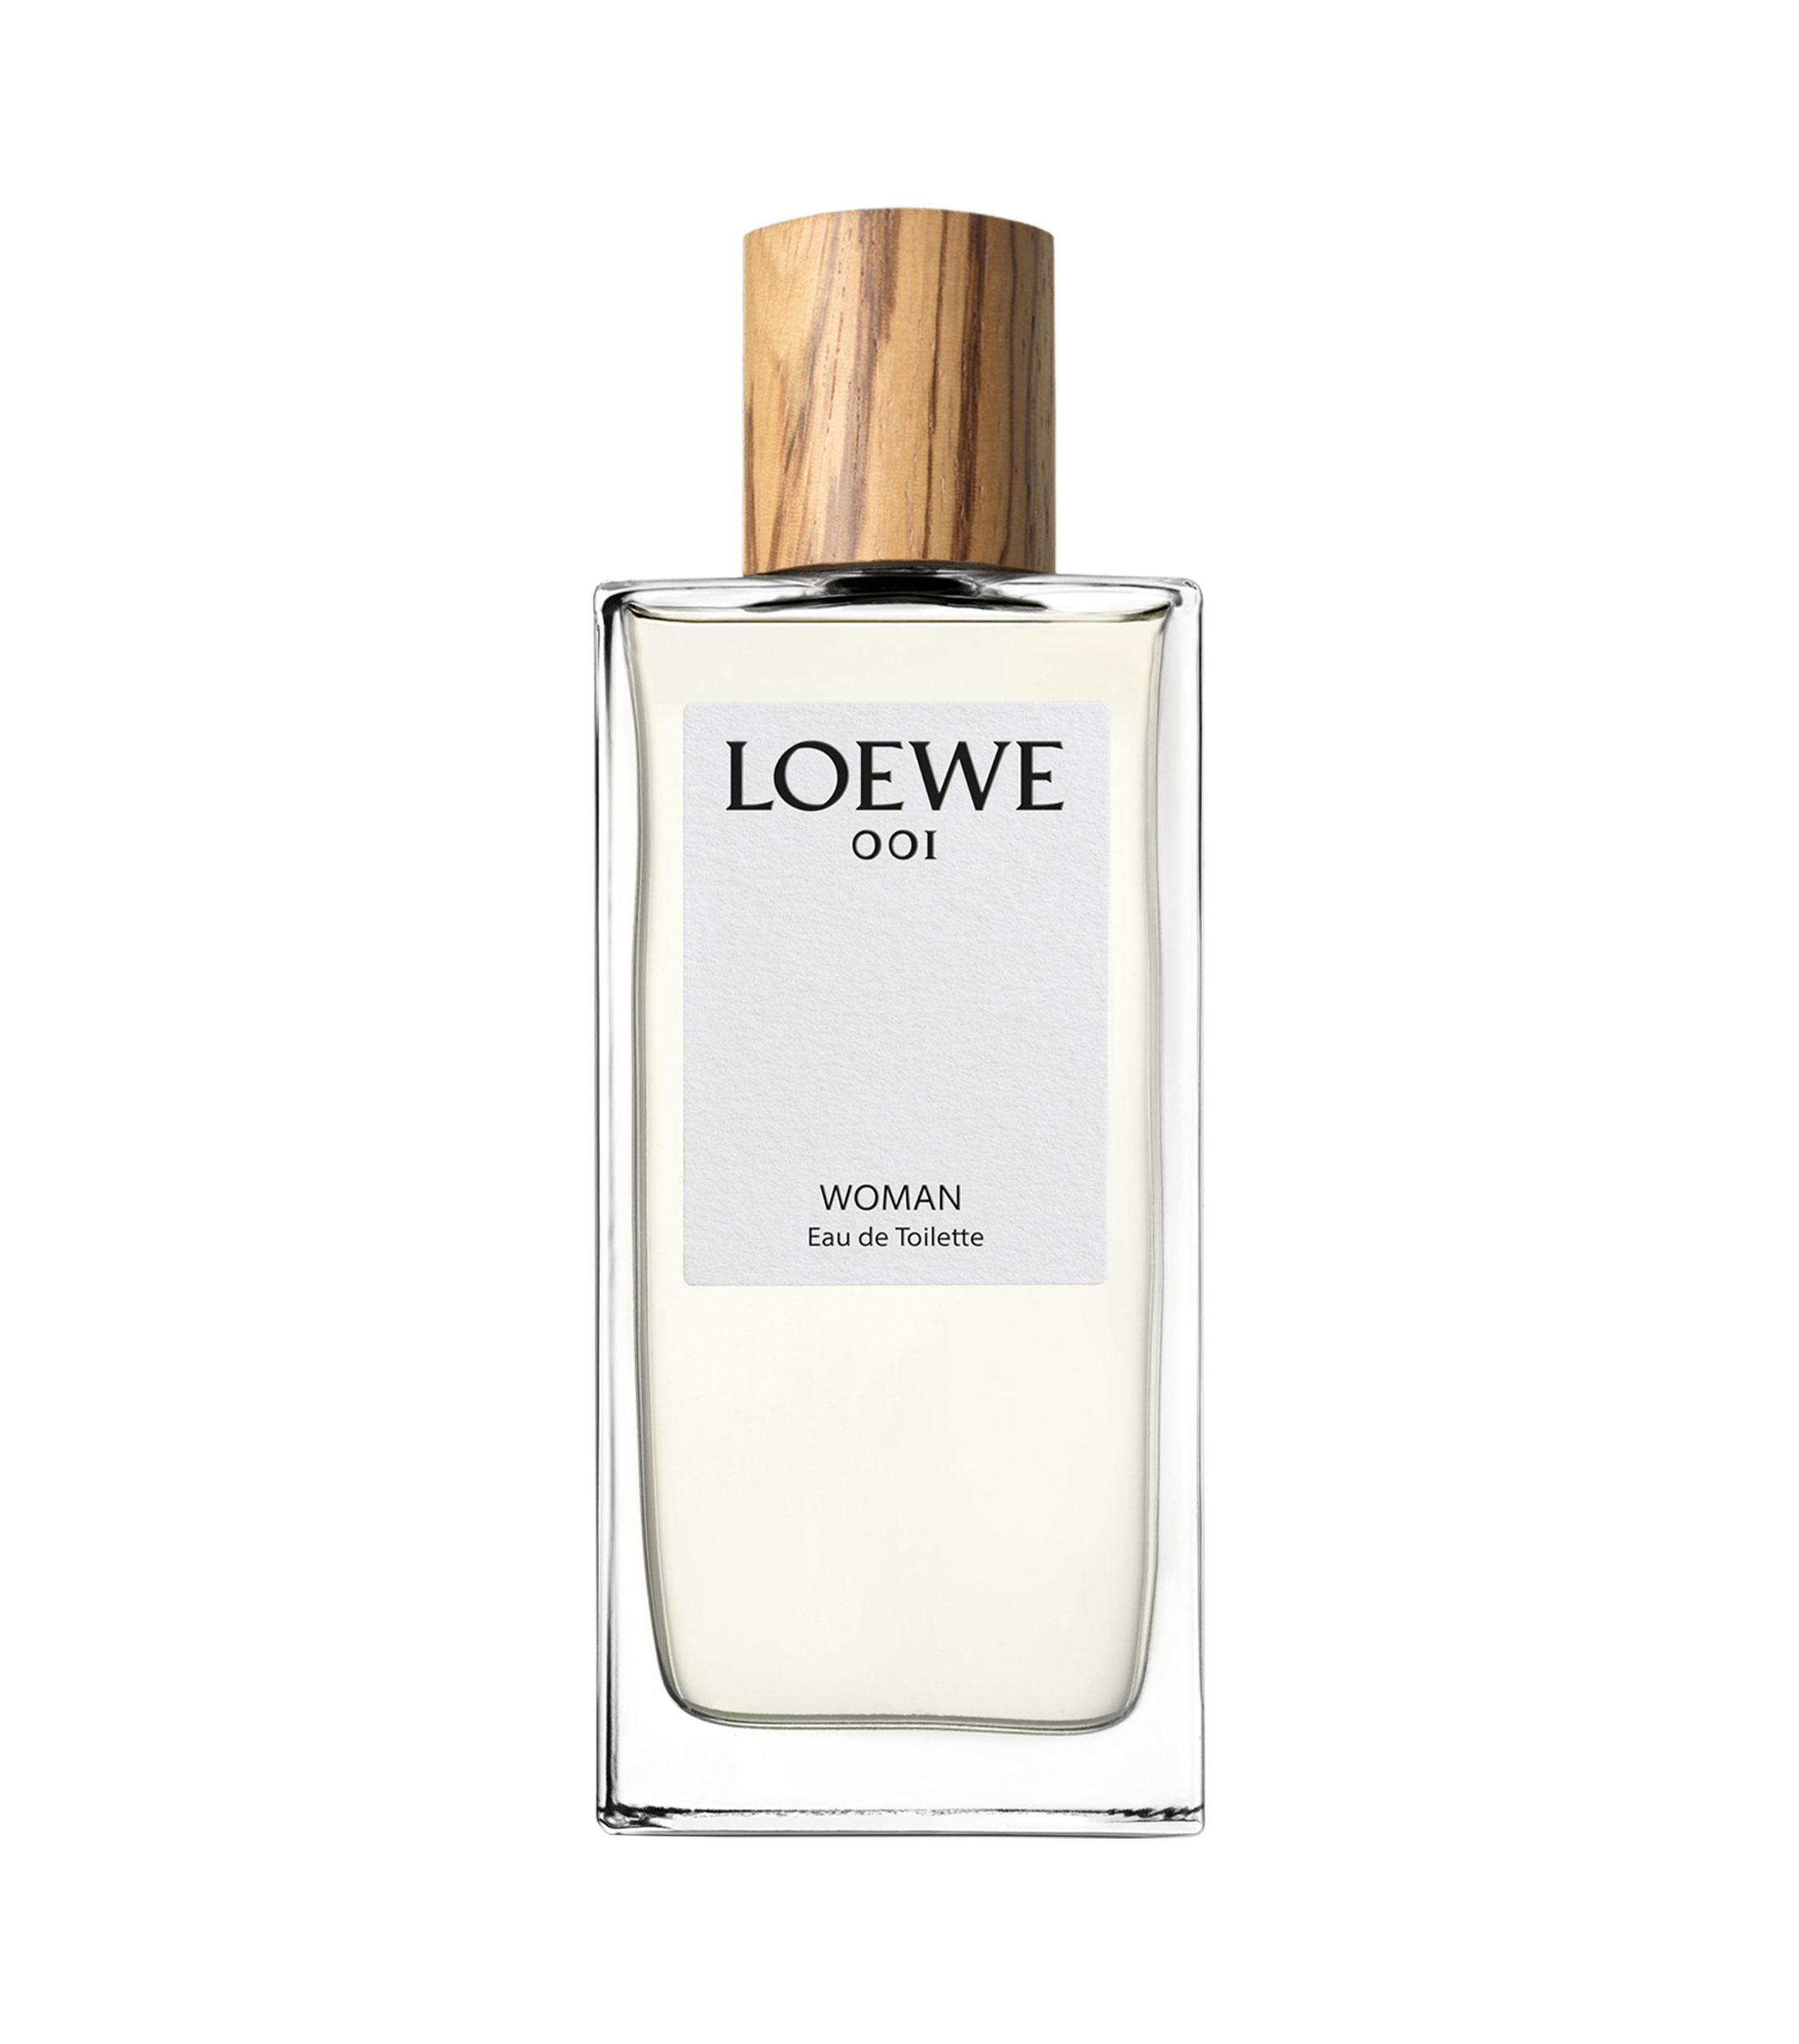 Loewe Fragancia Loewe 001 Woman, 100 ml Mujer - El Palacio de Hierro